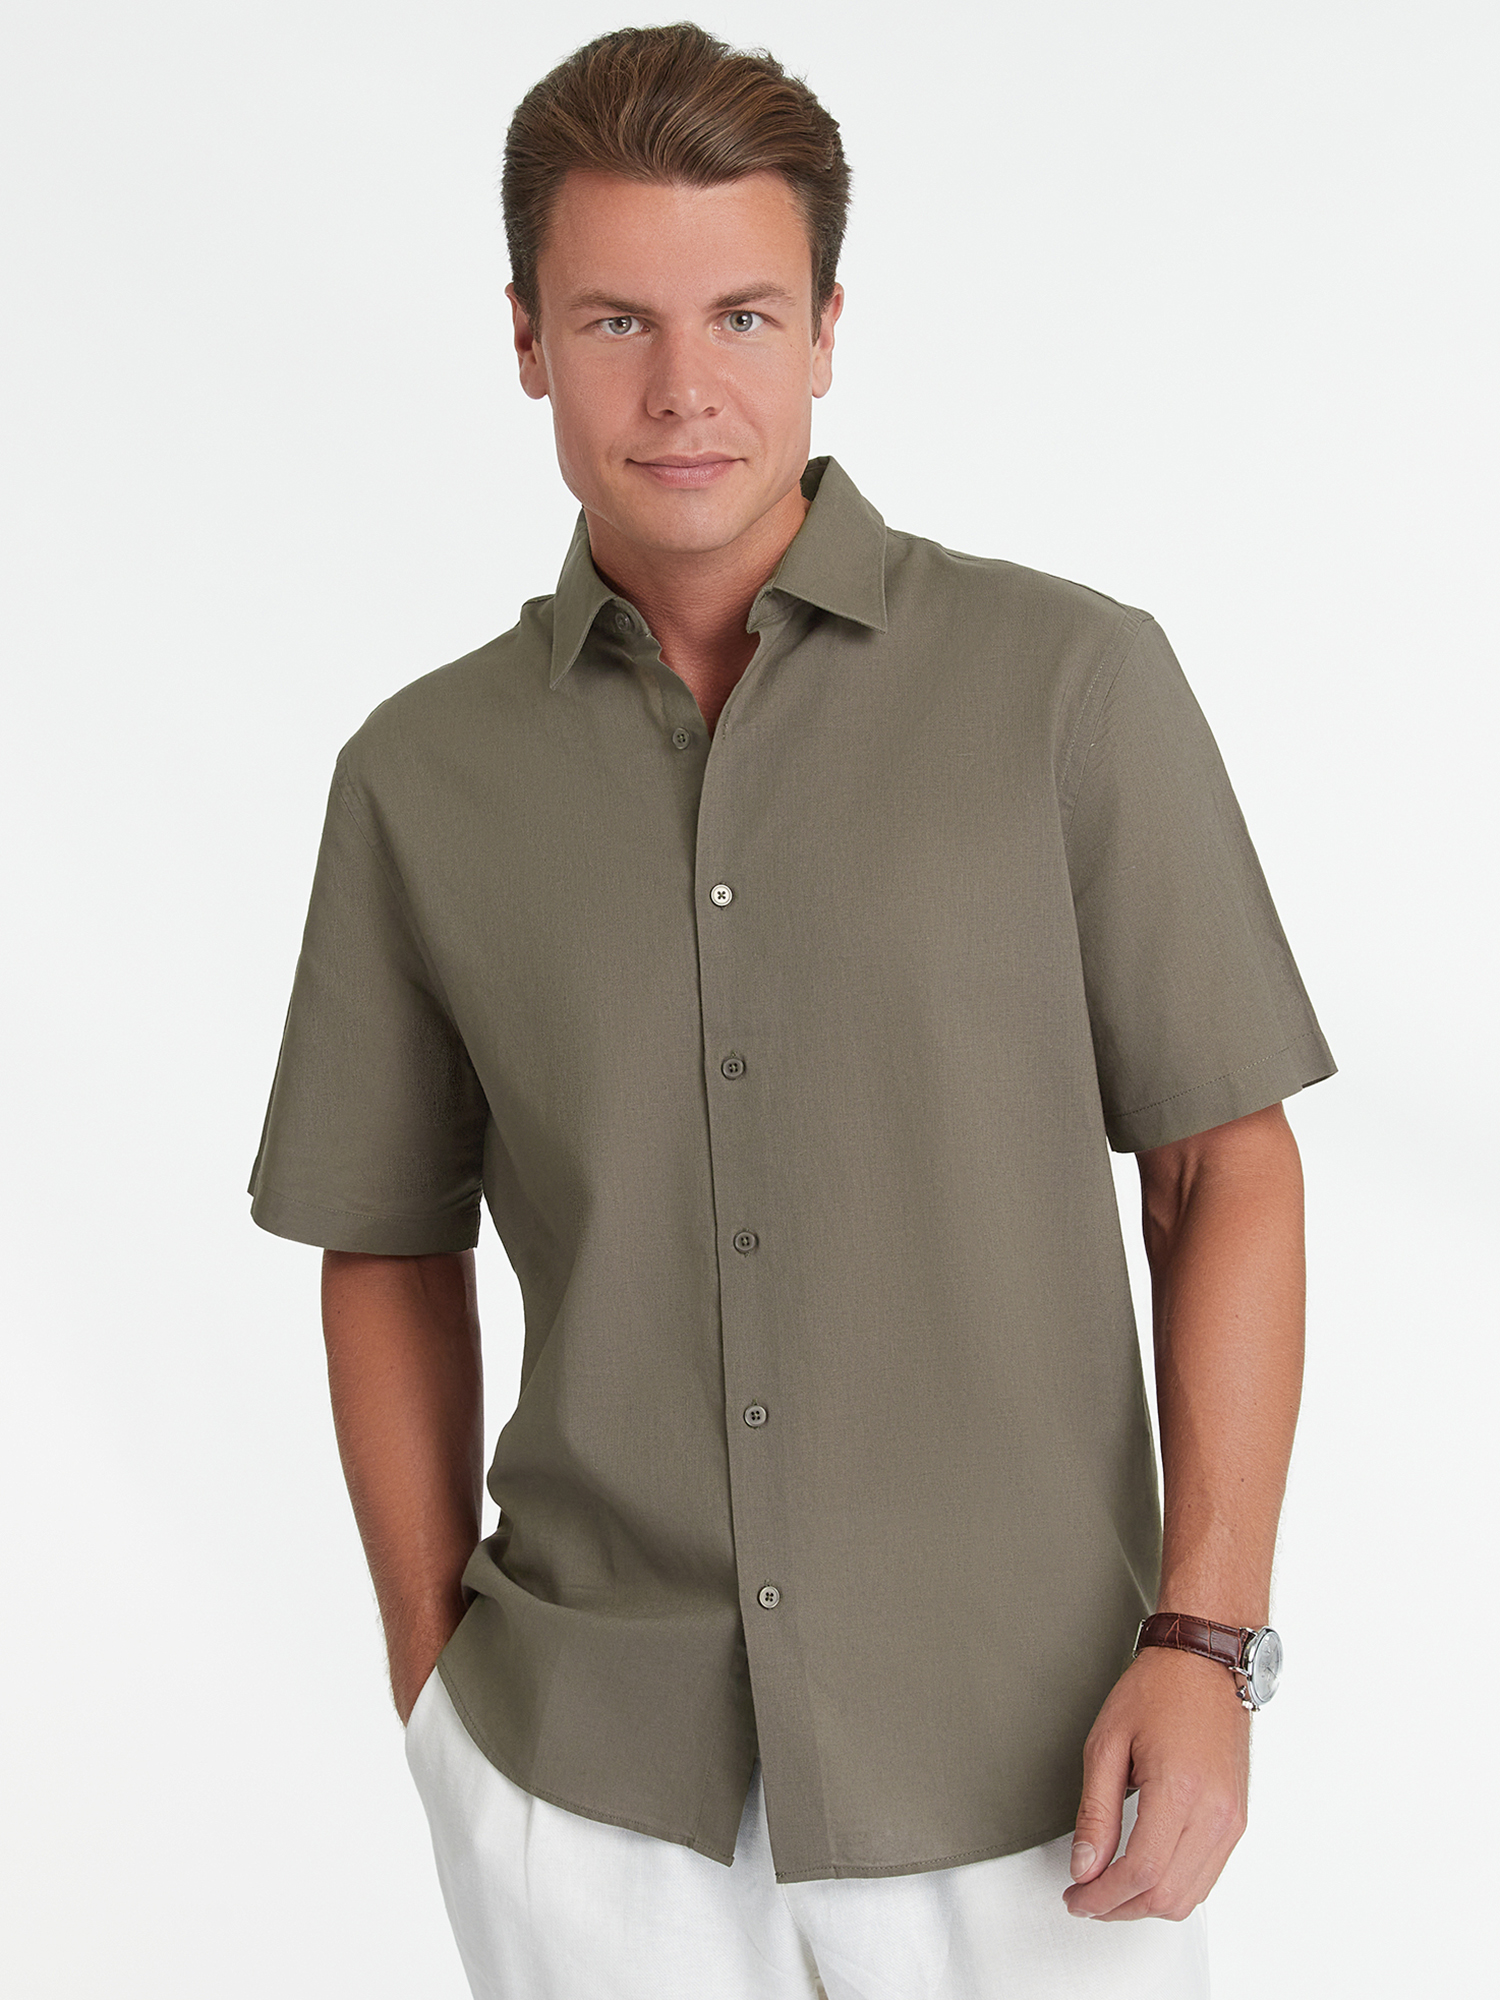 Рубашка мужская oodji 3L430005M зеленая S – купить в Москве, цены в интернет-магазинах на Мегамаркет